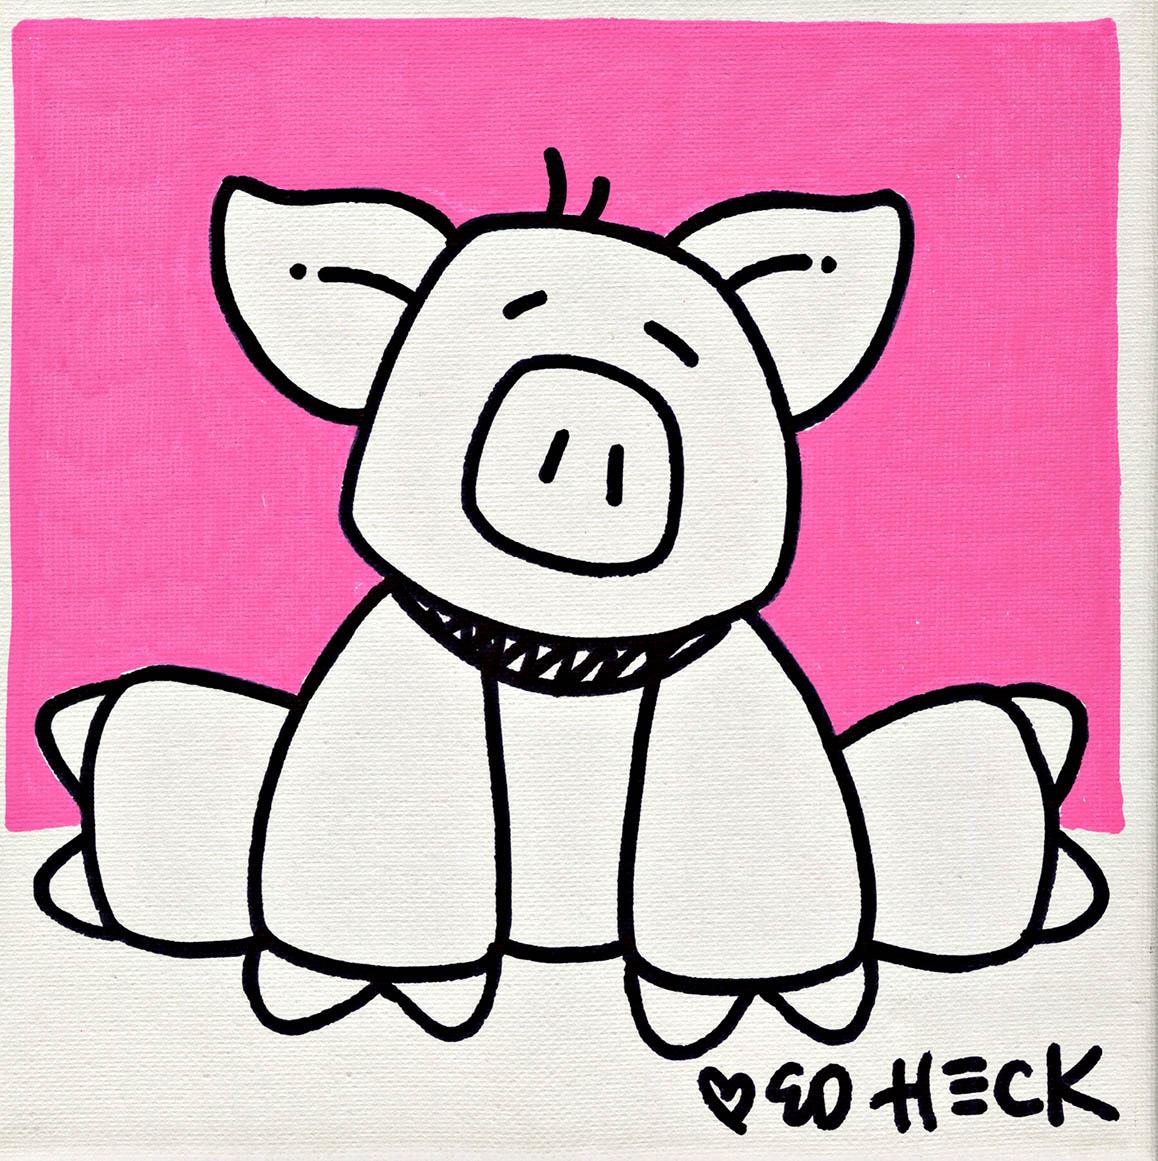 PIG IN PINK